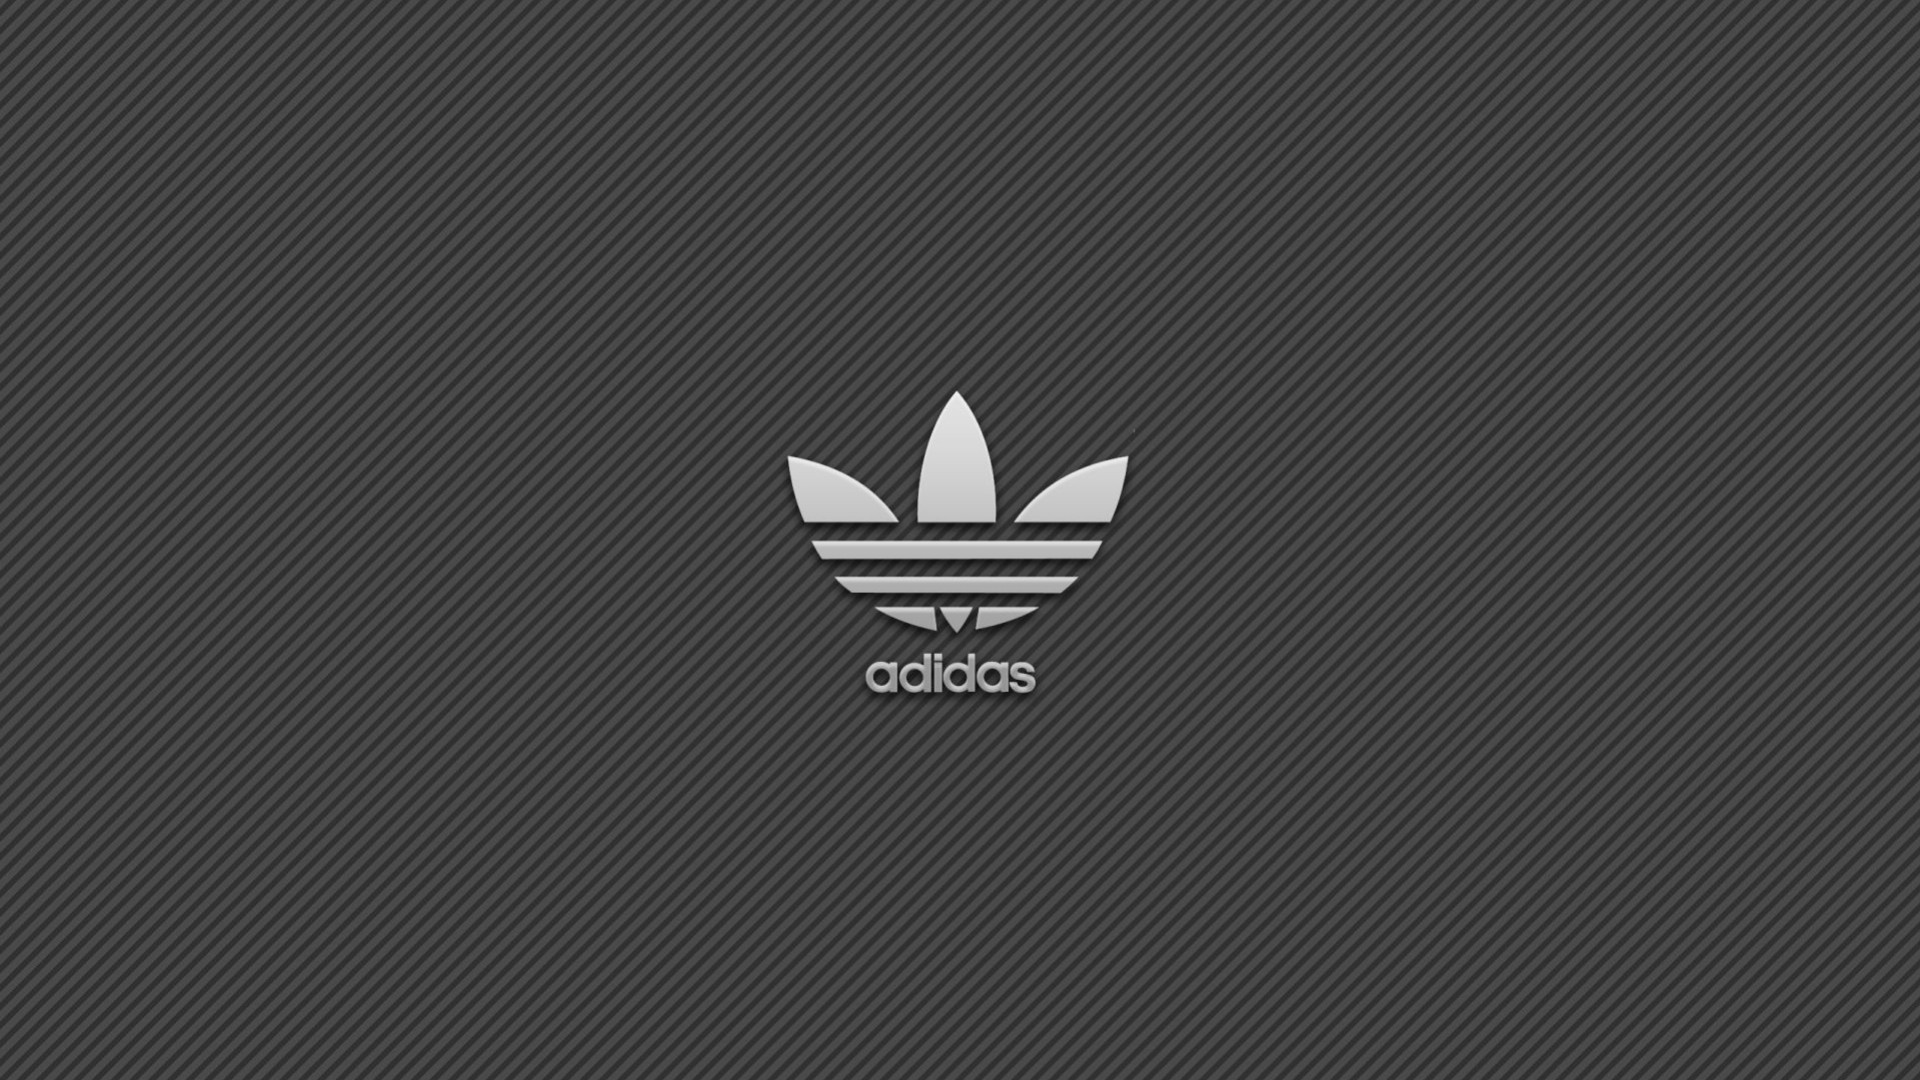 

Adidas Klingeltöne für Handys

